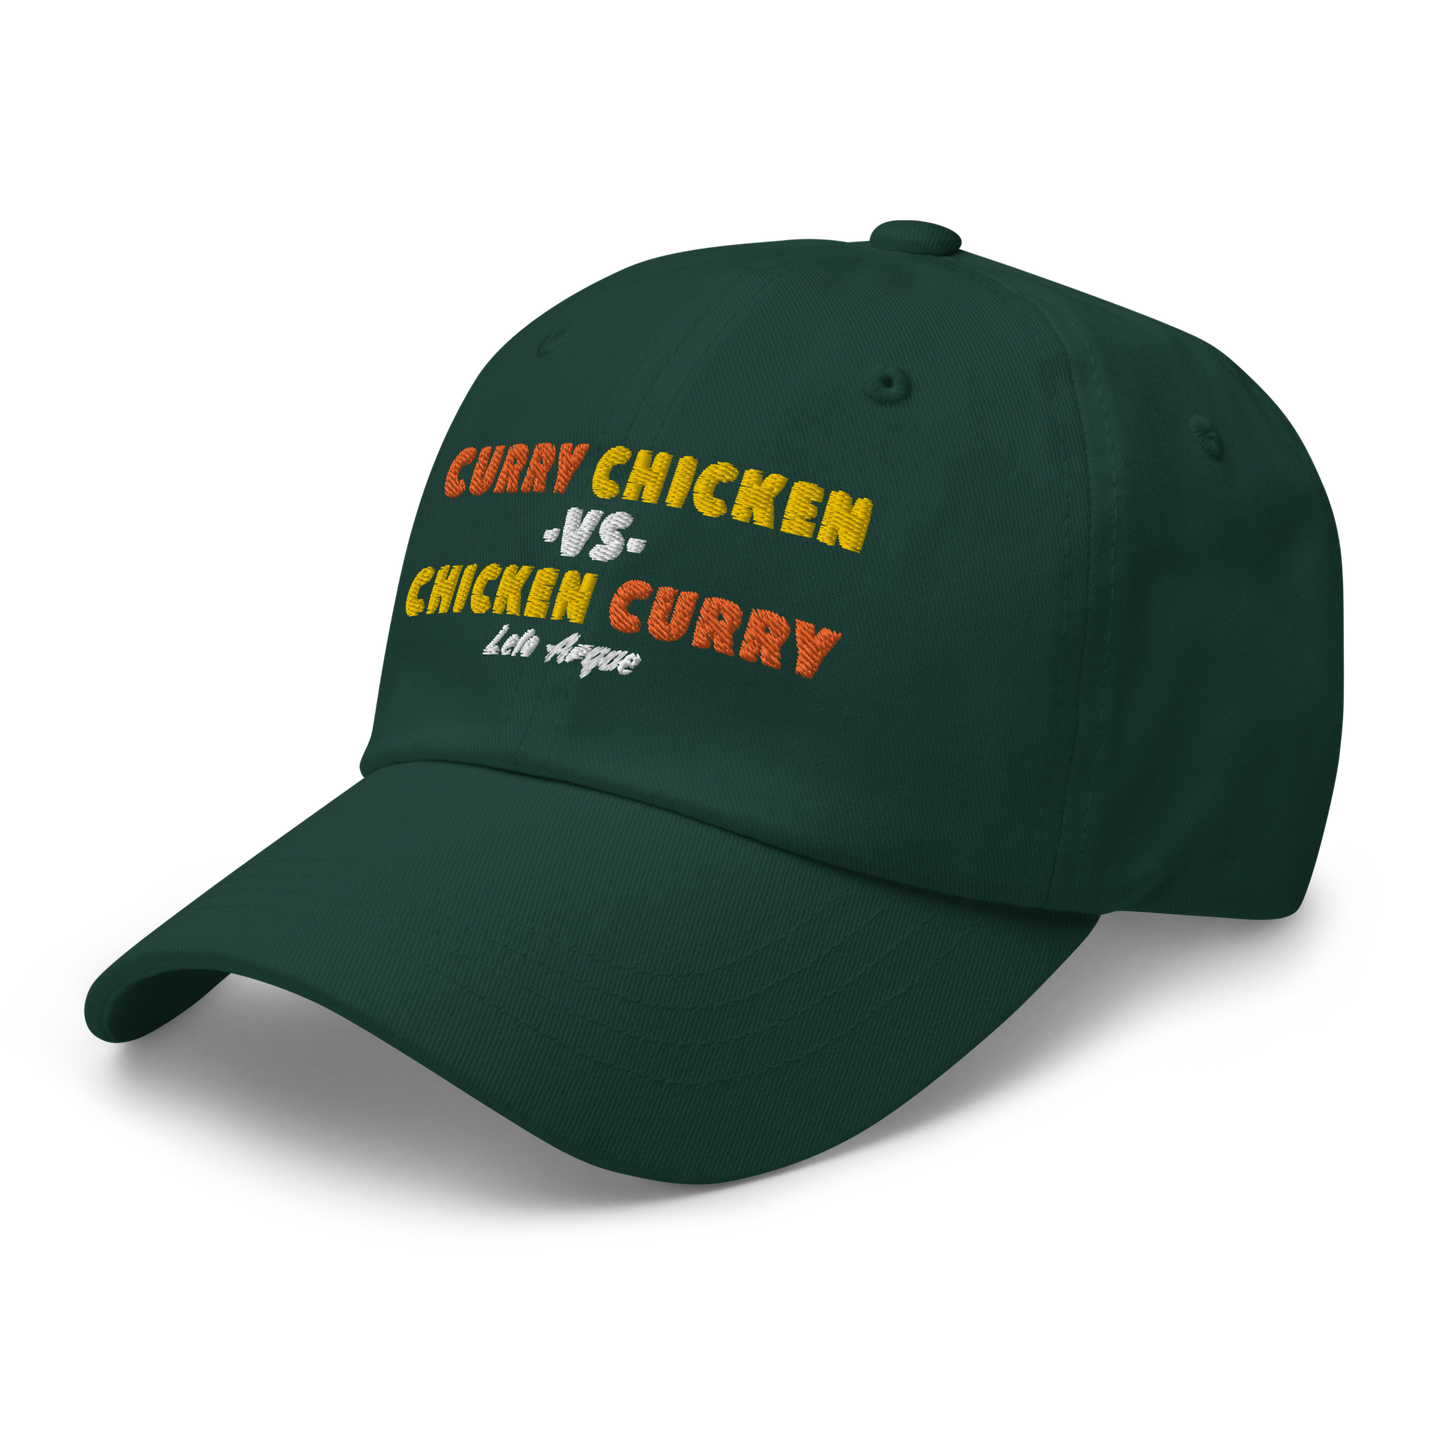 Curry Chicken -vs- Chicken Curry Dad hat